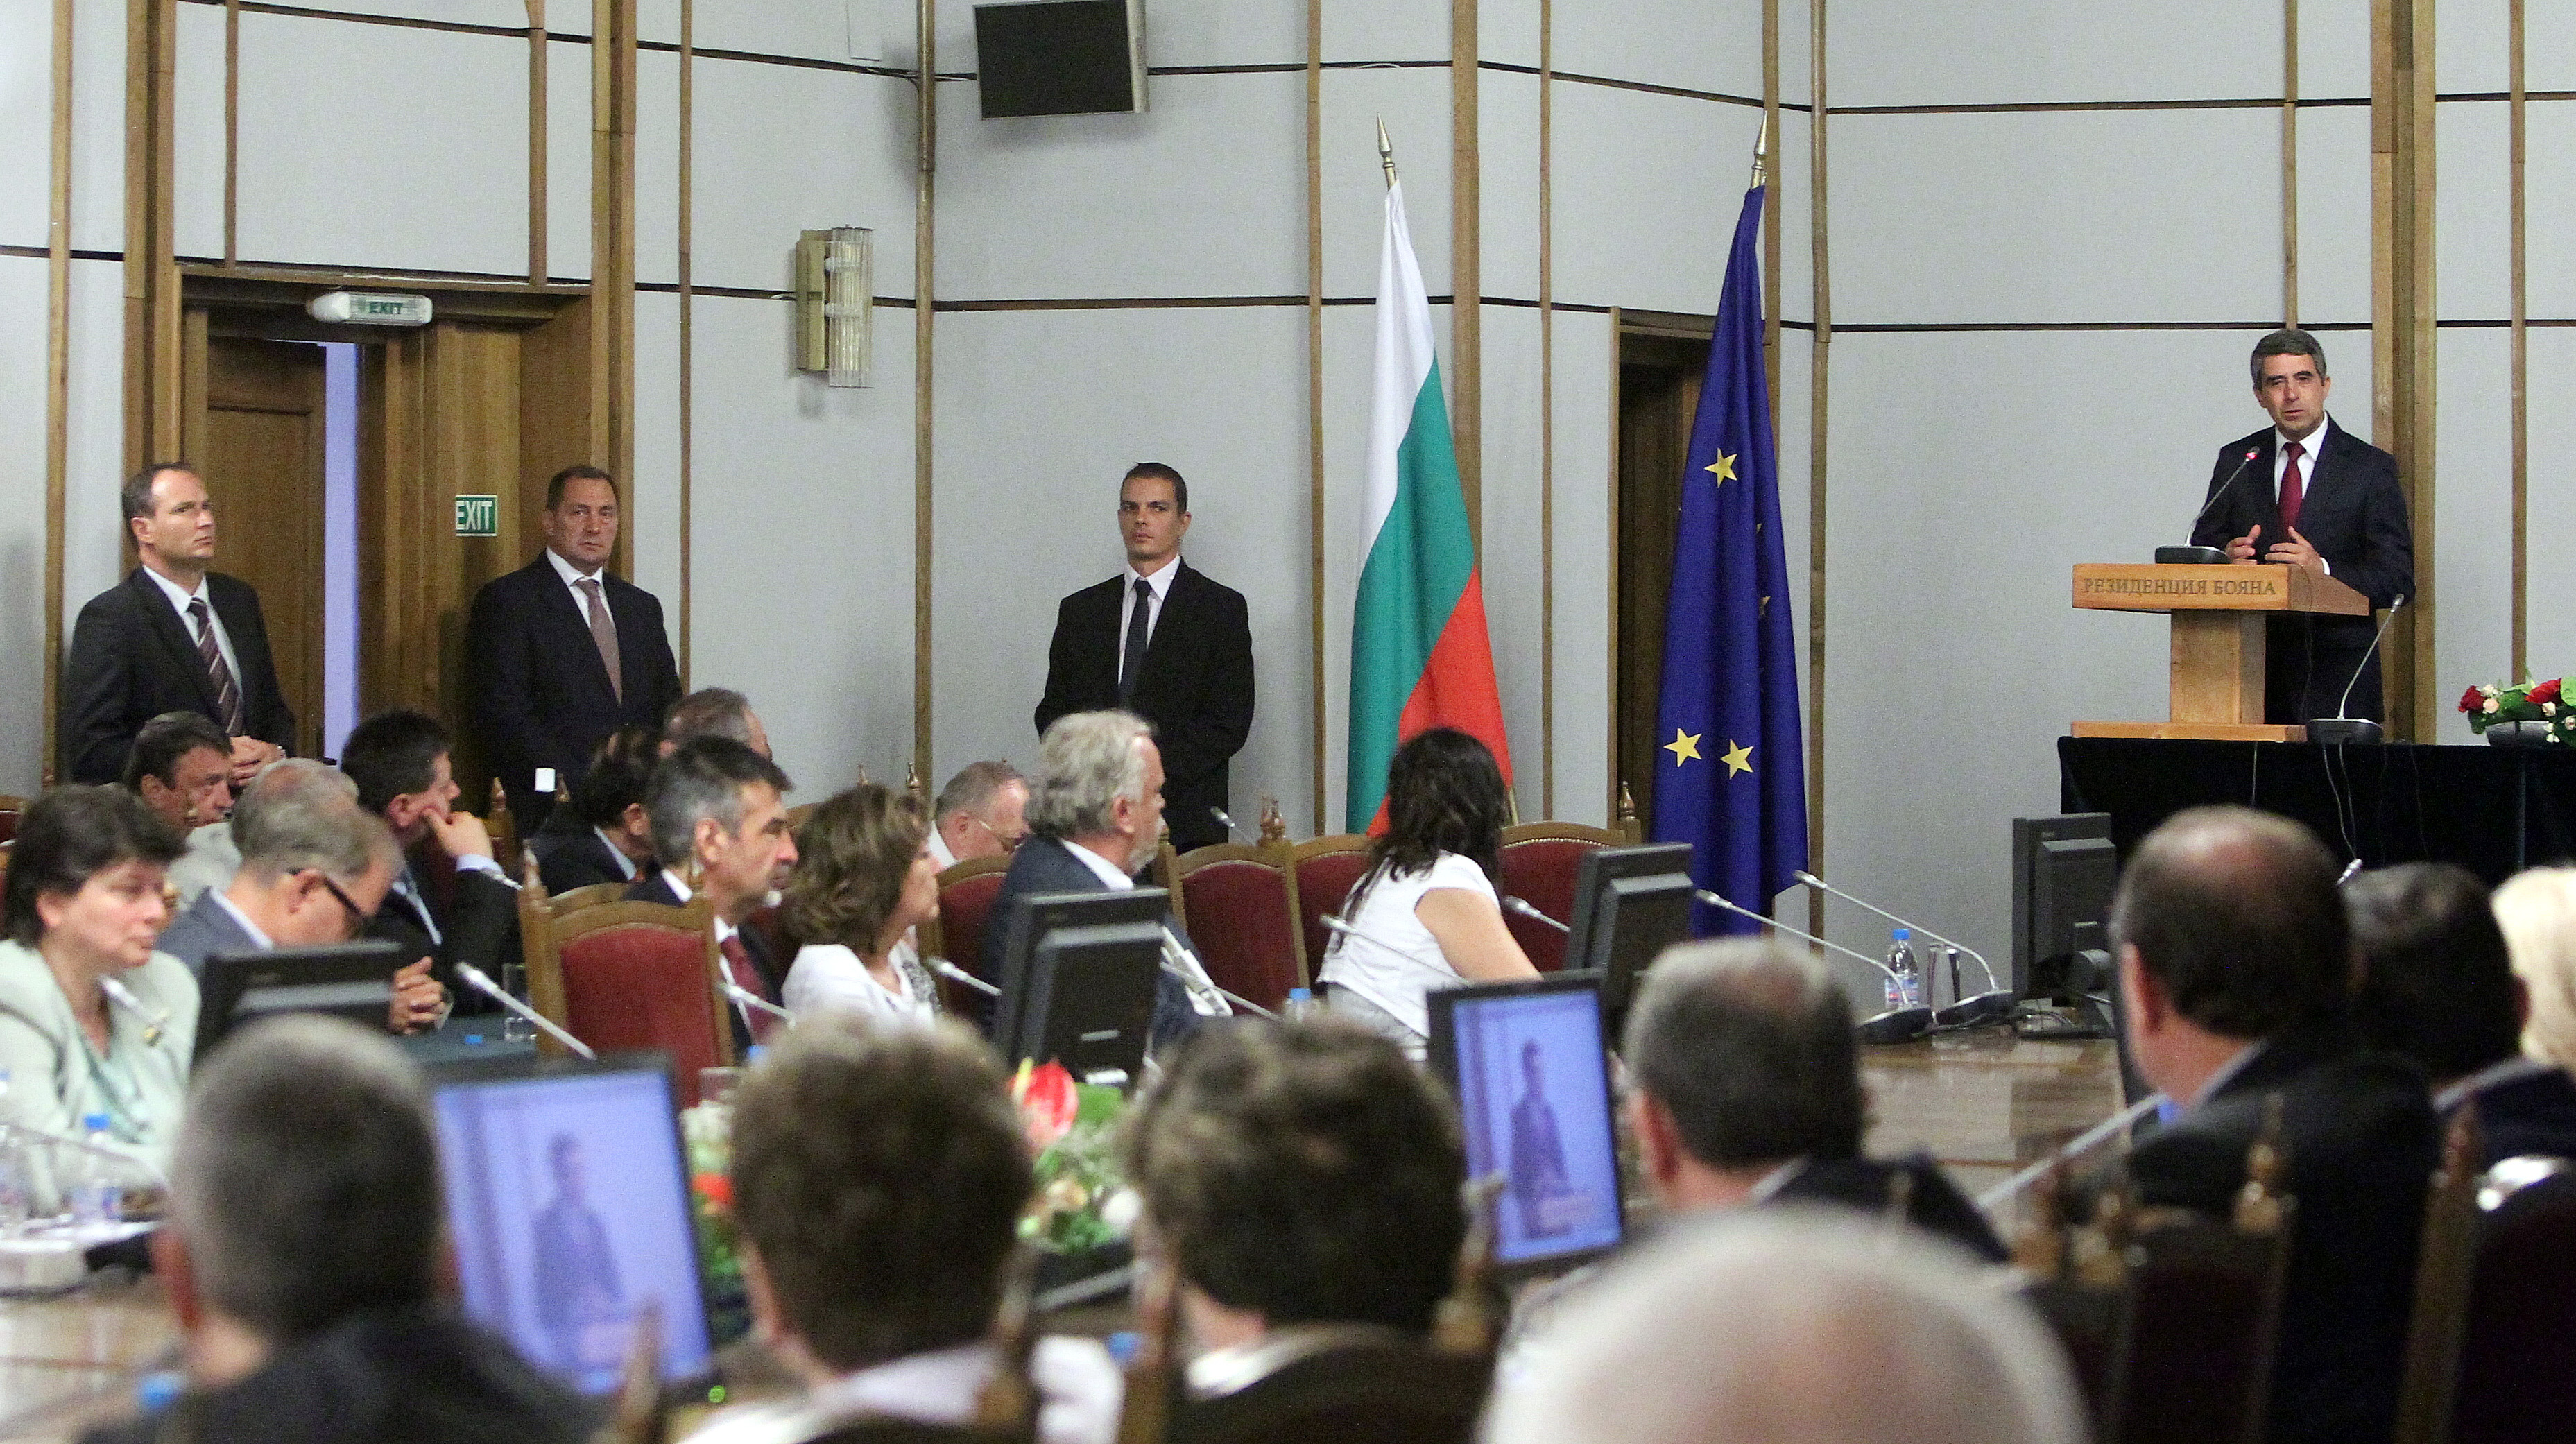 Президентът към посланиците: Хвалете България по света